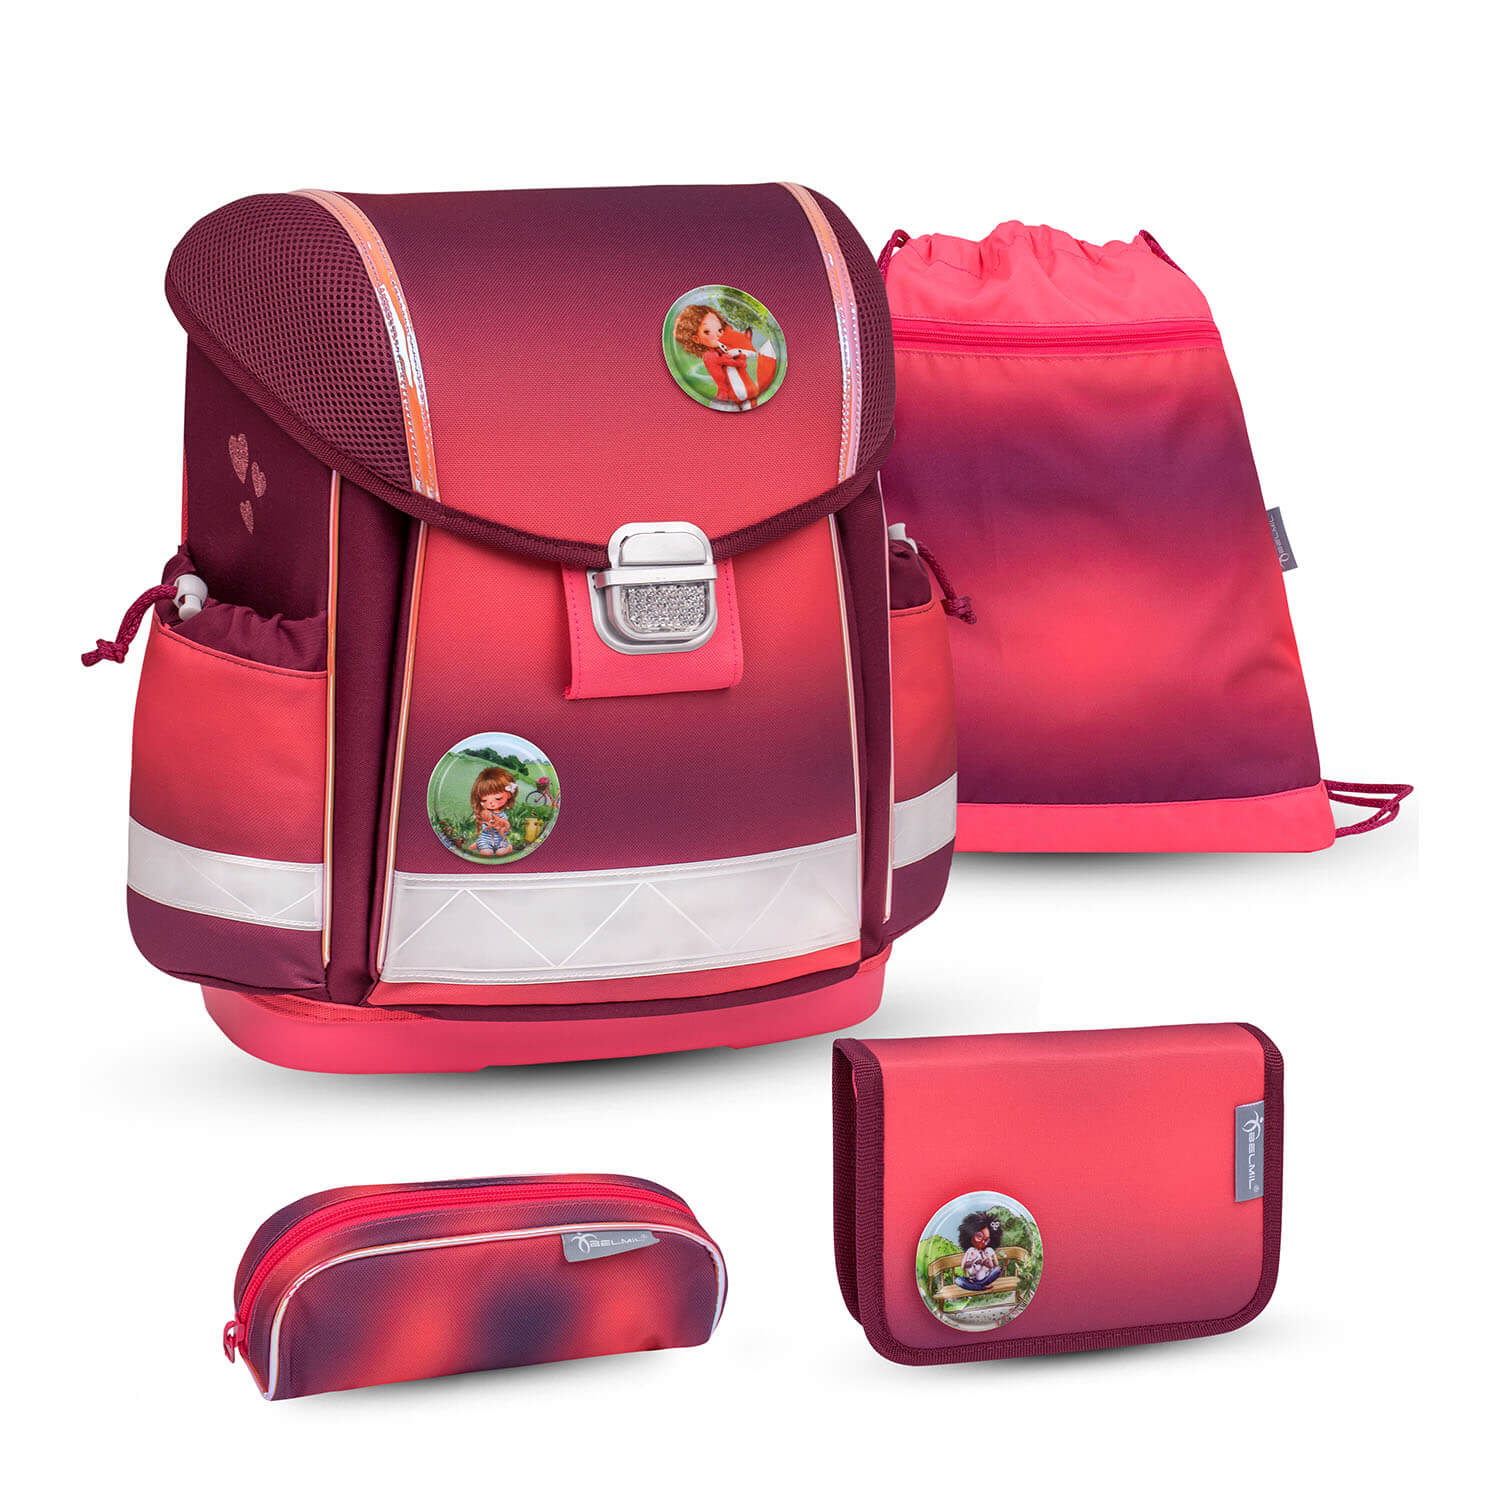 Classy Mahogany schoolbag set 5 pcs